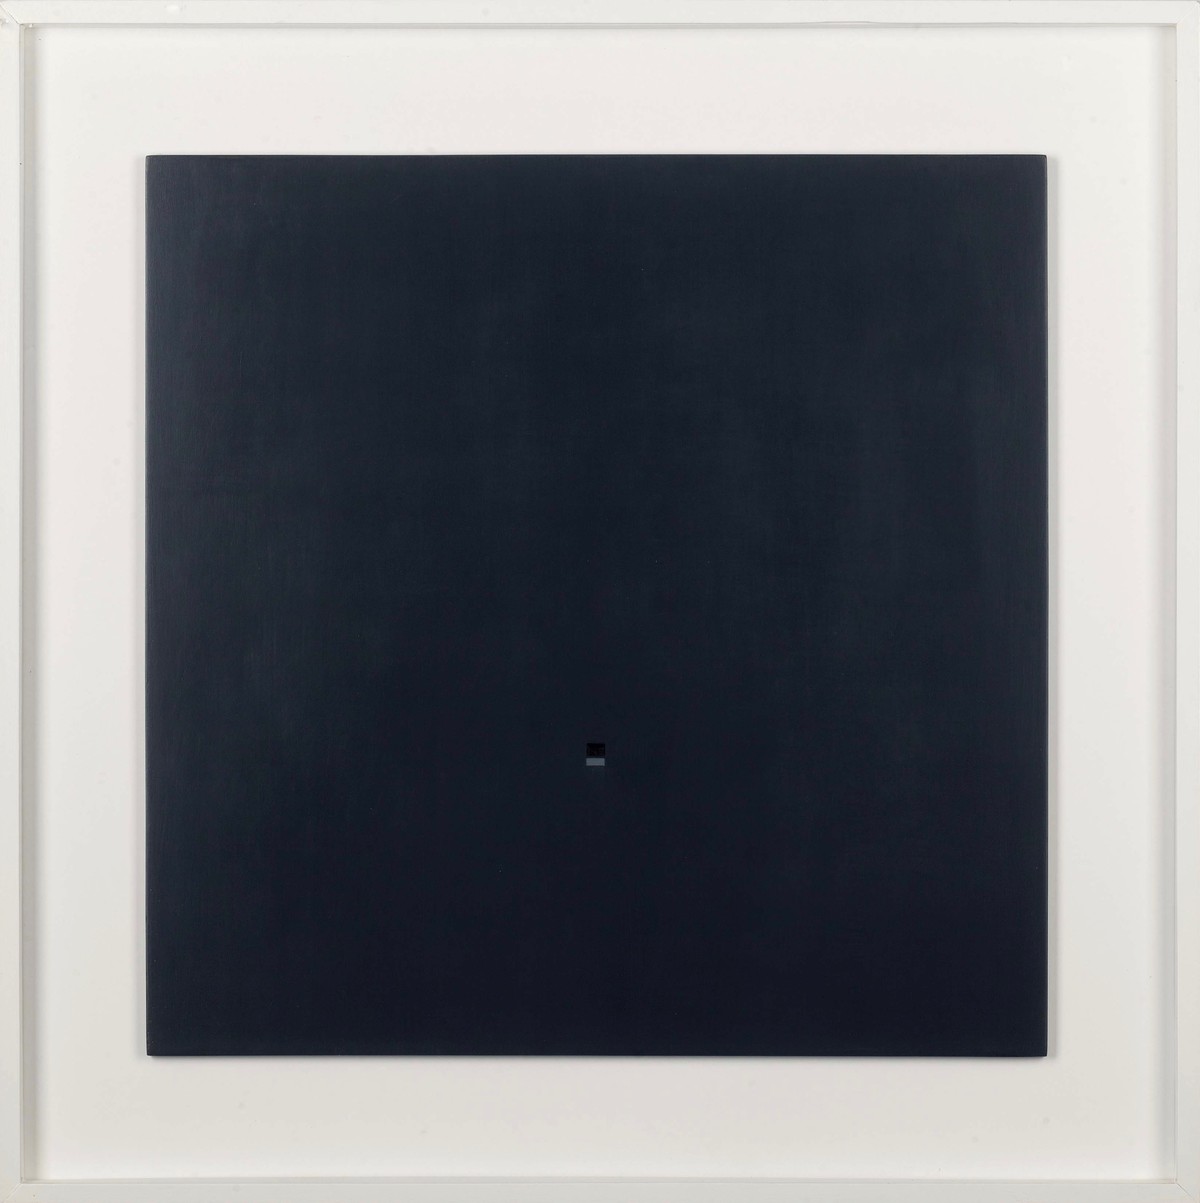 Antonio Calderara: Presenze nel nero, 1969/1970, Ölfarben auf Holz, 54 x 54 cm, Privatsammlung